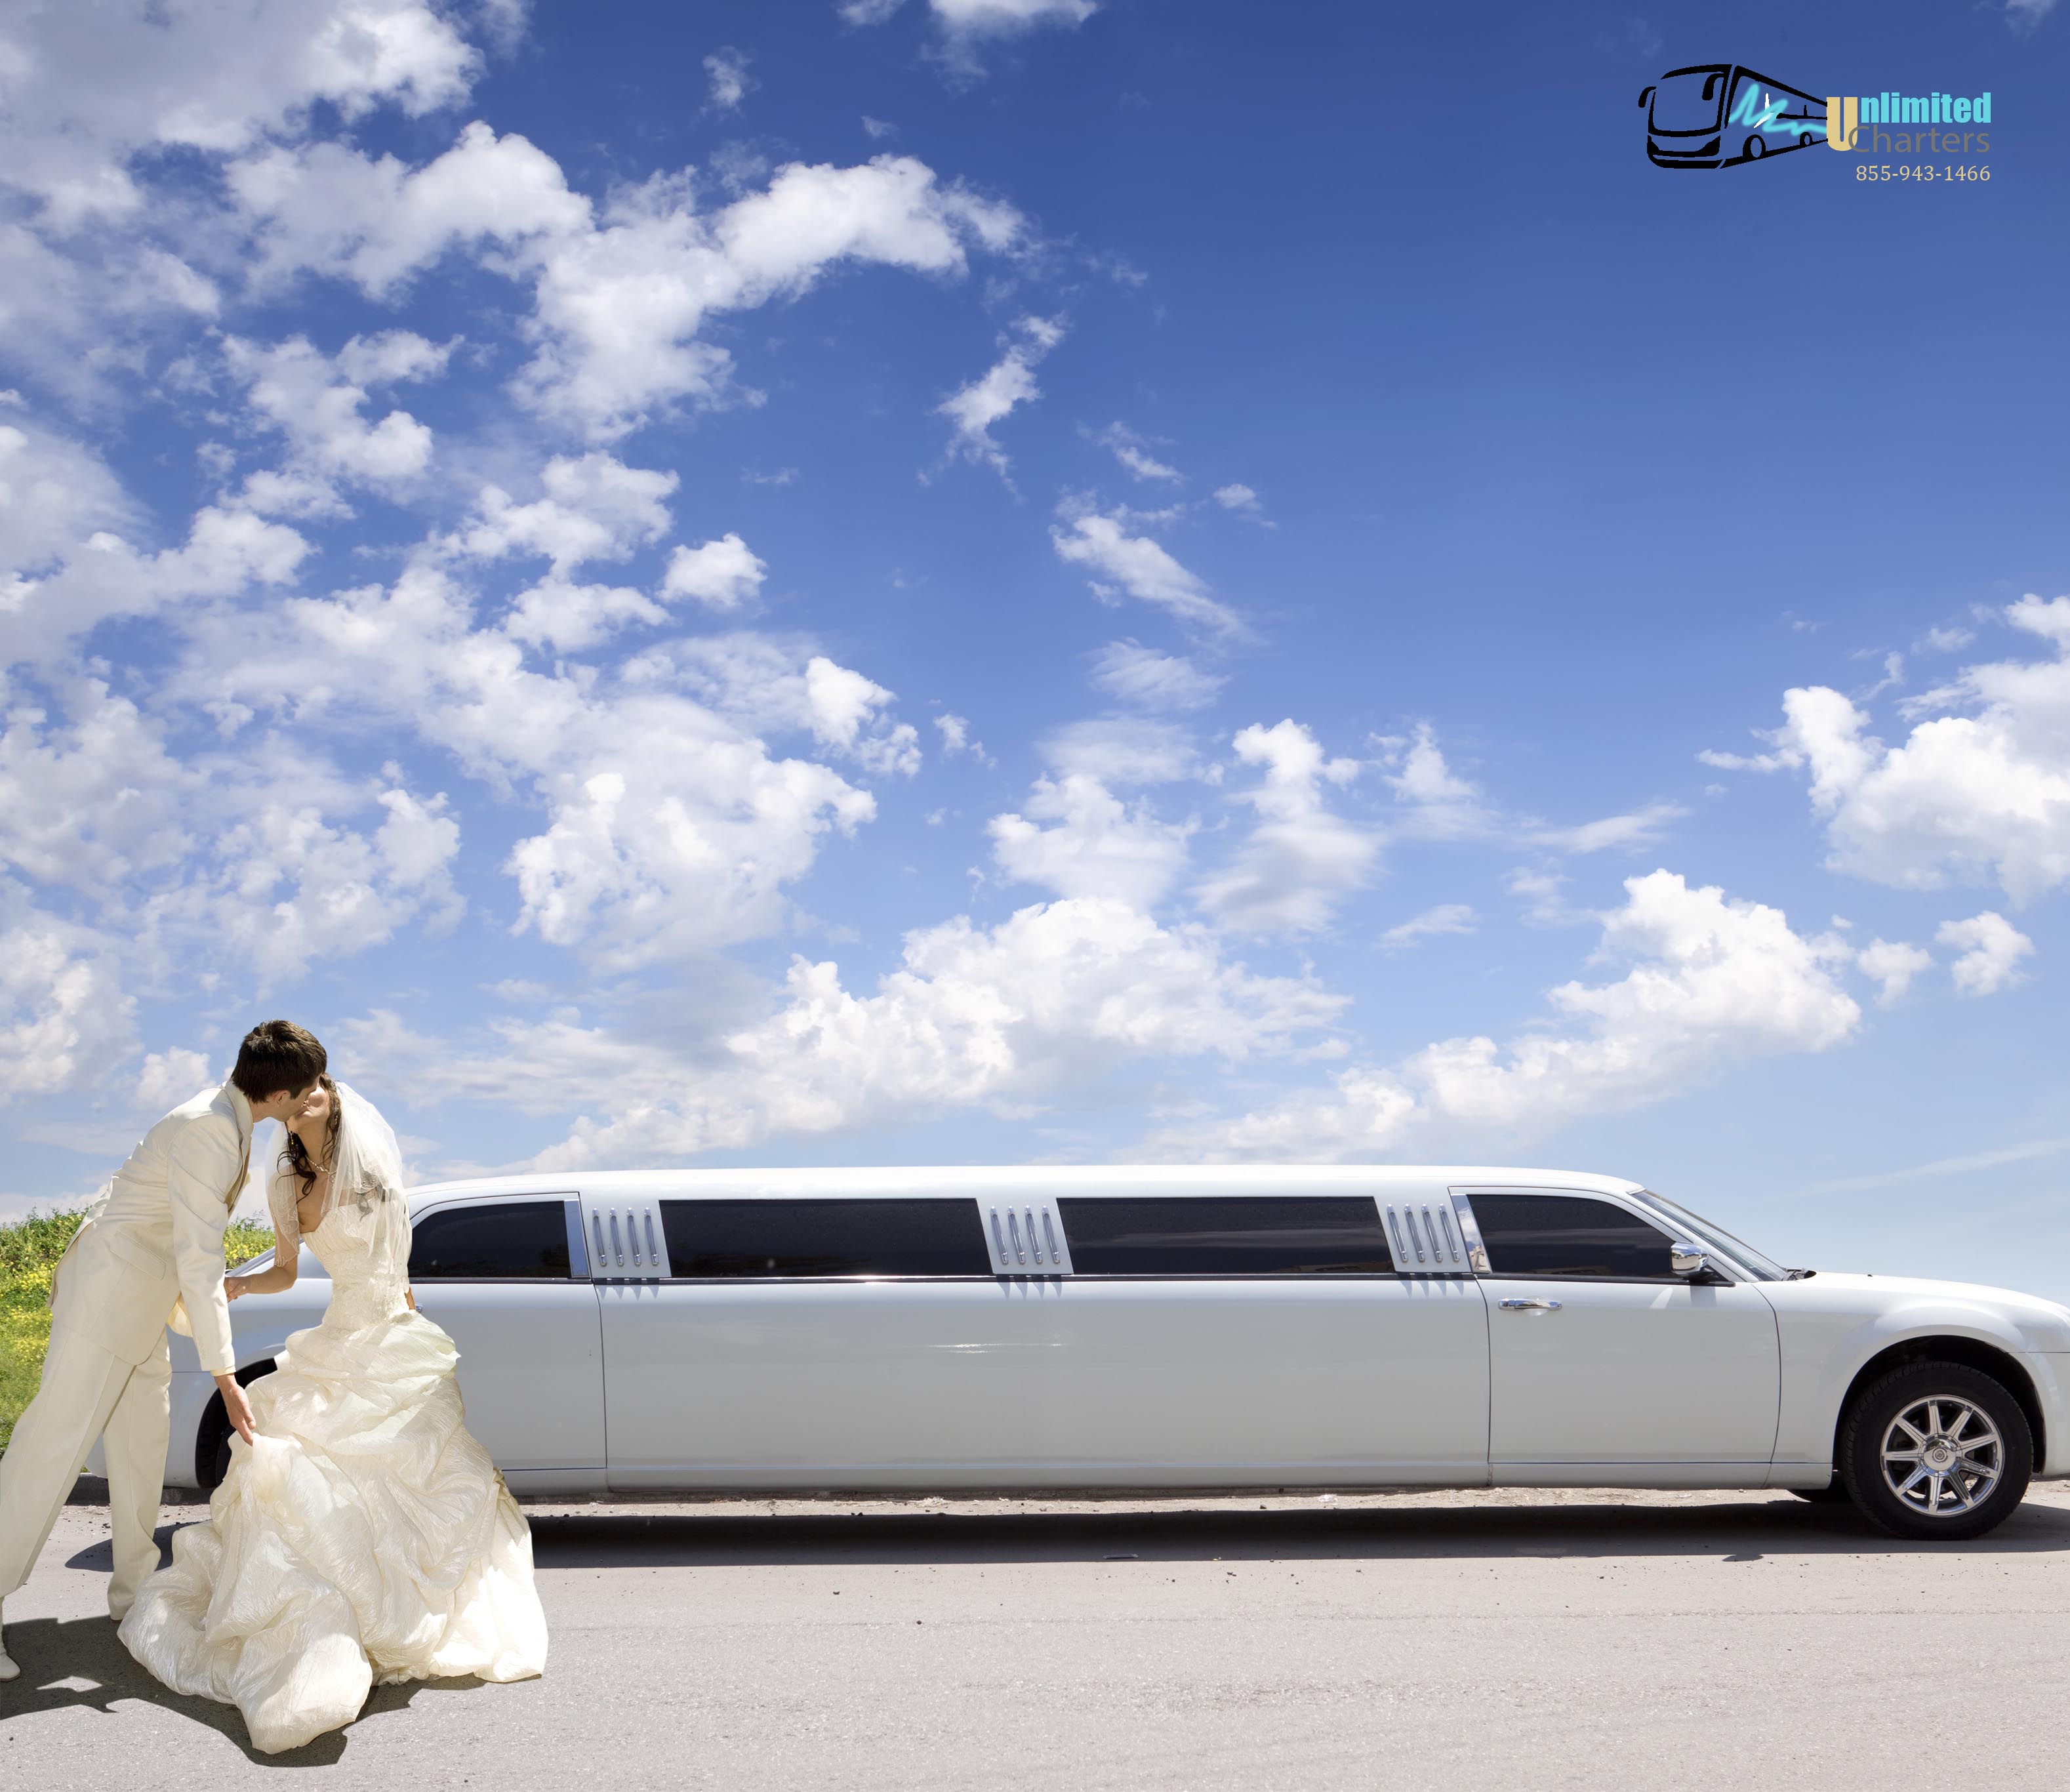 Wedding Transportation Derby,MD